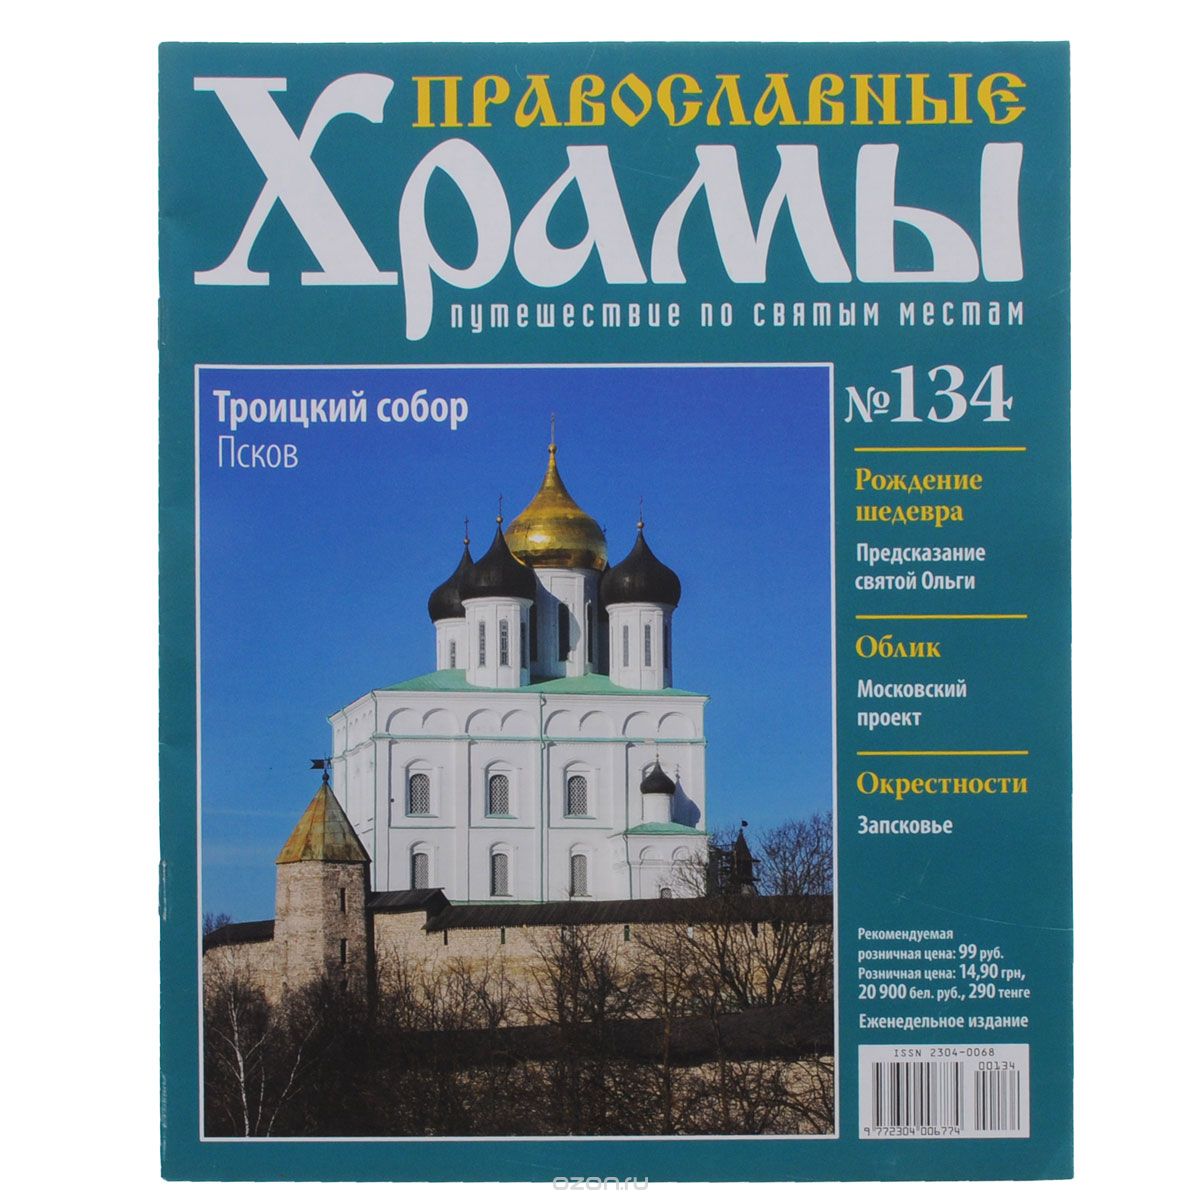 Скачать книгу "Журнал "Православные храмы. Путешествие по святым местам" № 134"